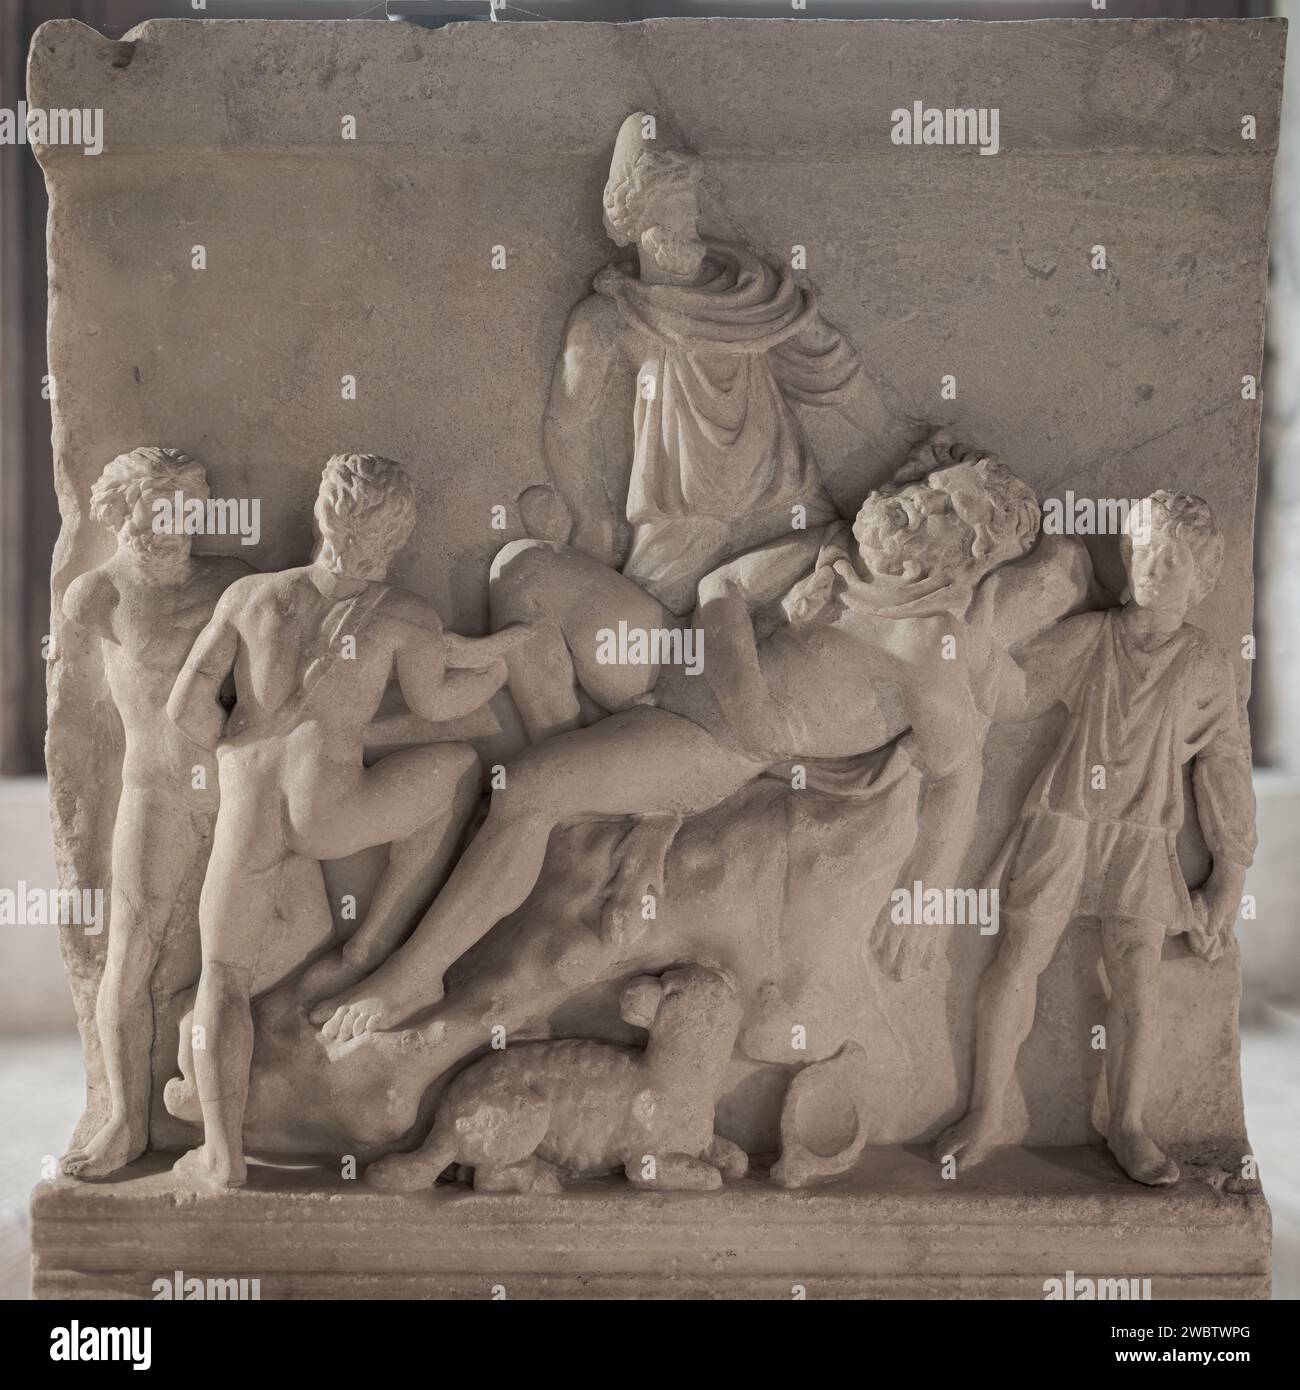 Antica arte romana, rilievo da un sarcofago con scena dell'Odissea (Ulisse e i suoi compagni ciechi Polifemo) II secolo d.C.; Castello Ursino Foto Stock